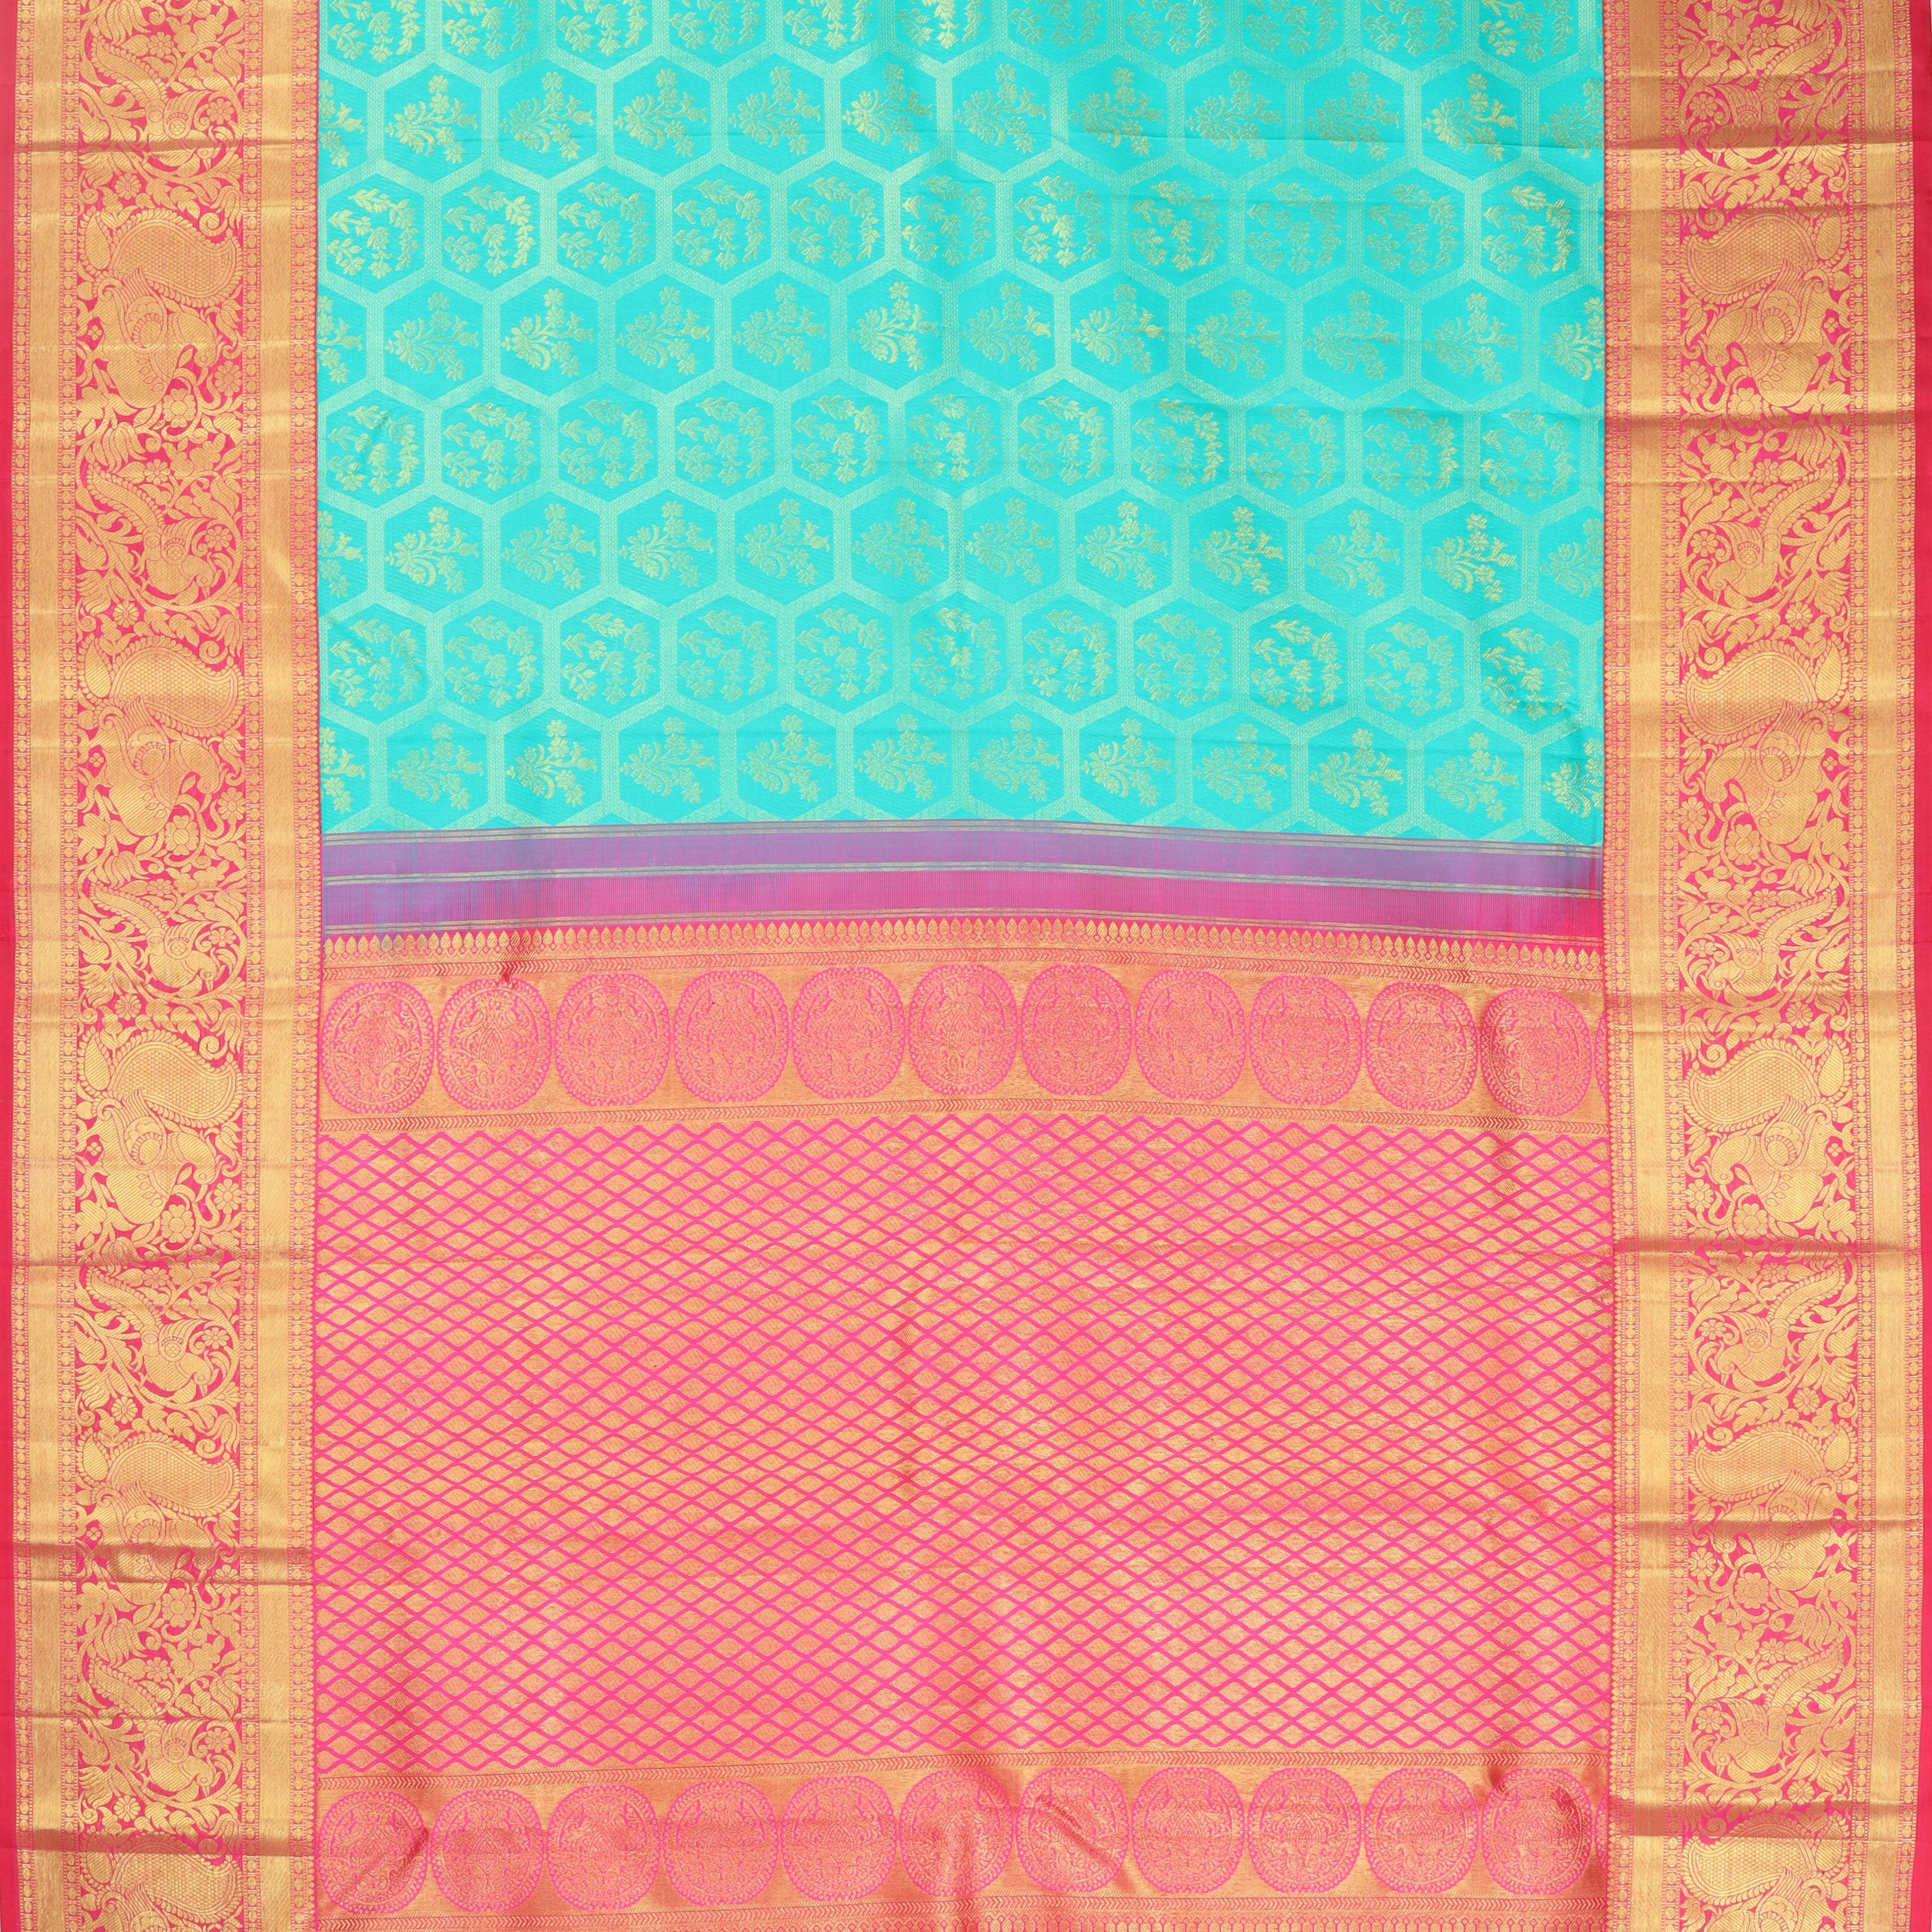 Light Blue Kanjivaram Silk Saree With Floral Motifs - Singhania's